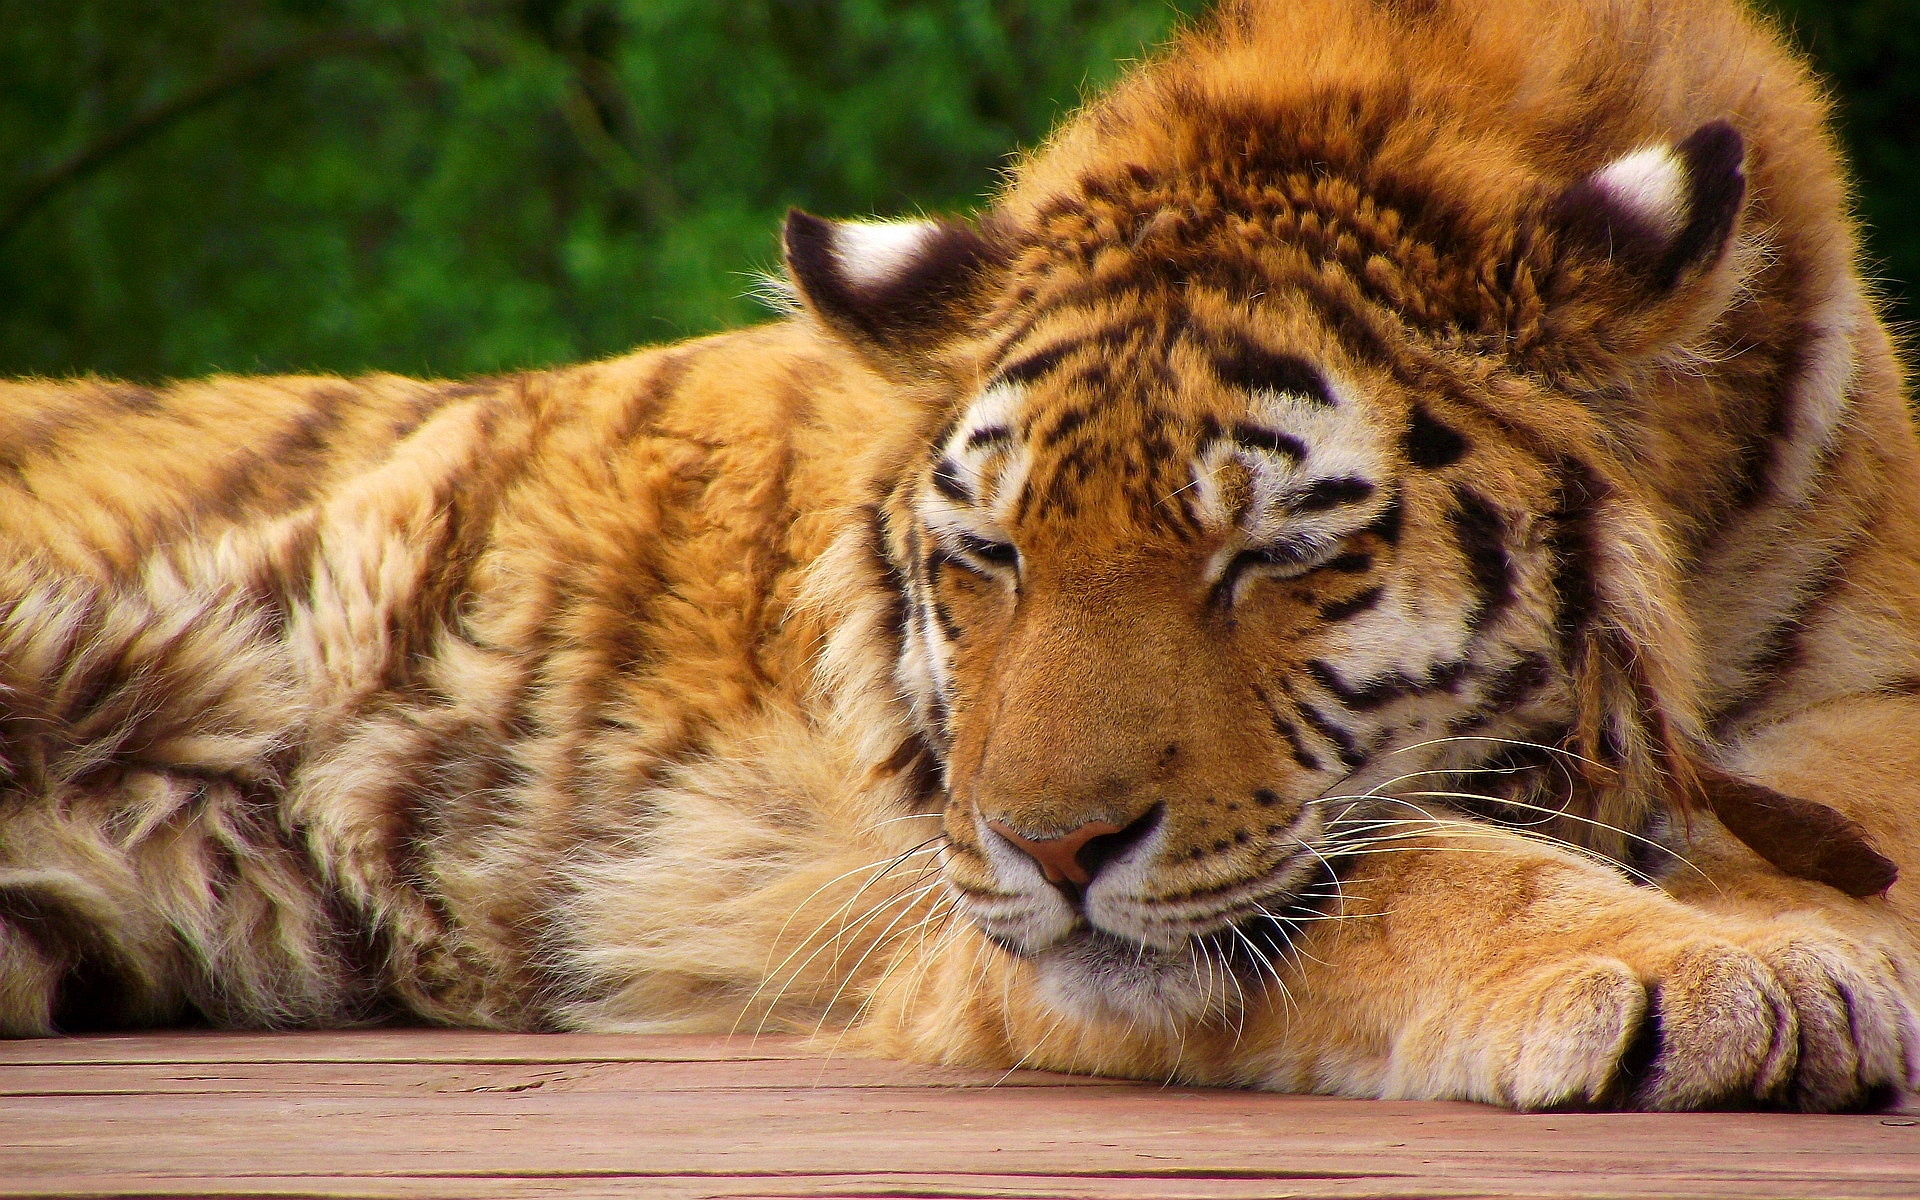 Tiger Sleep